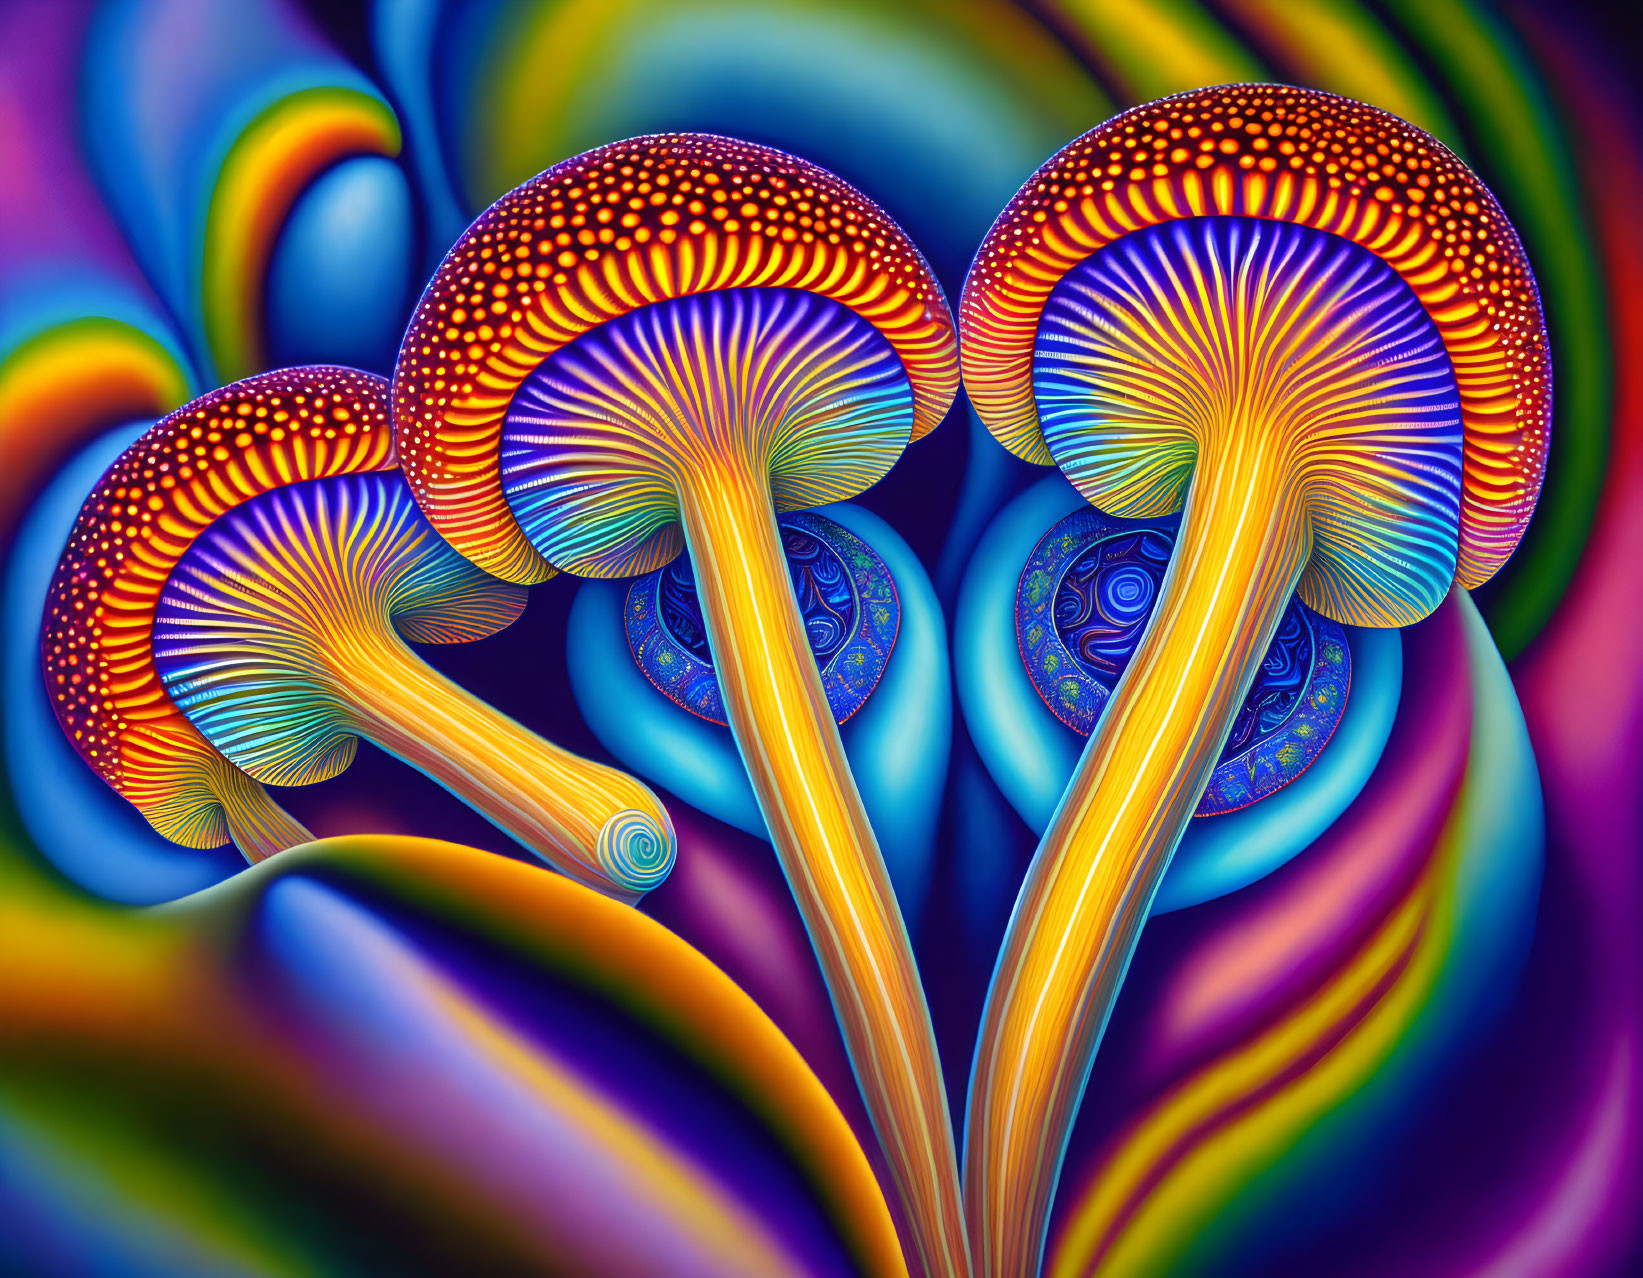 magic mushrooms ?alex grey art